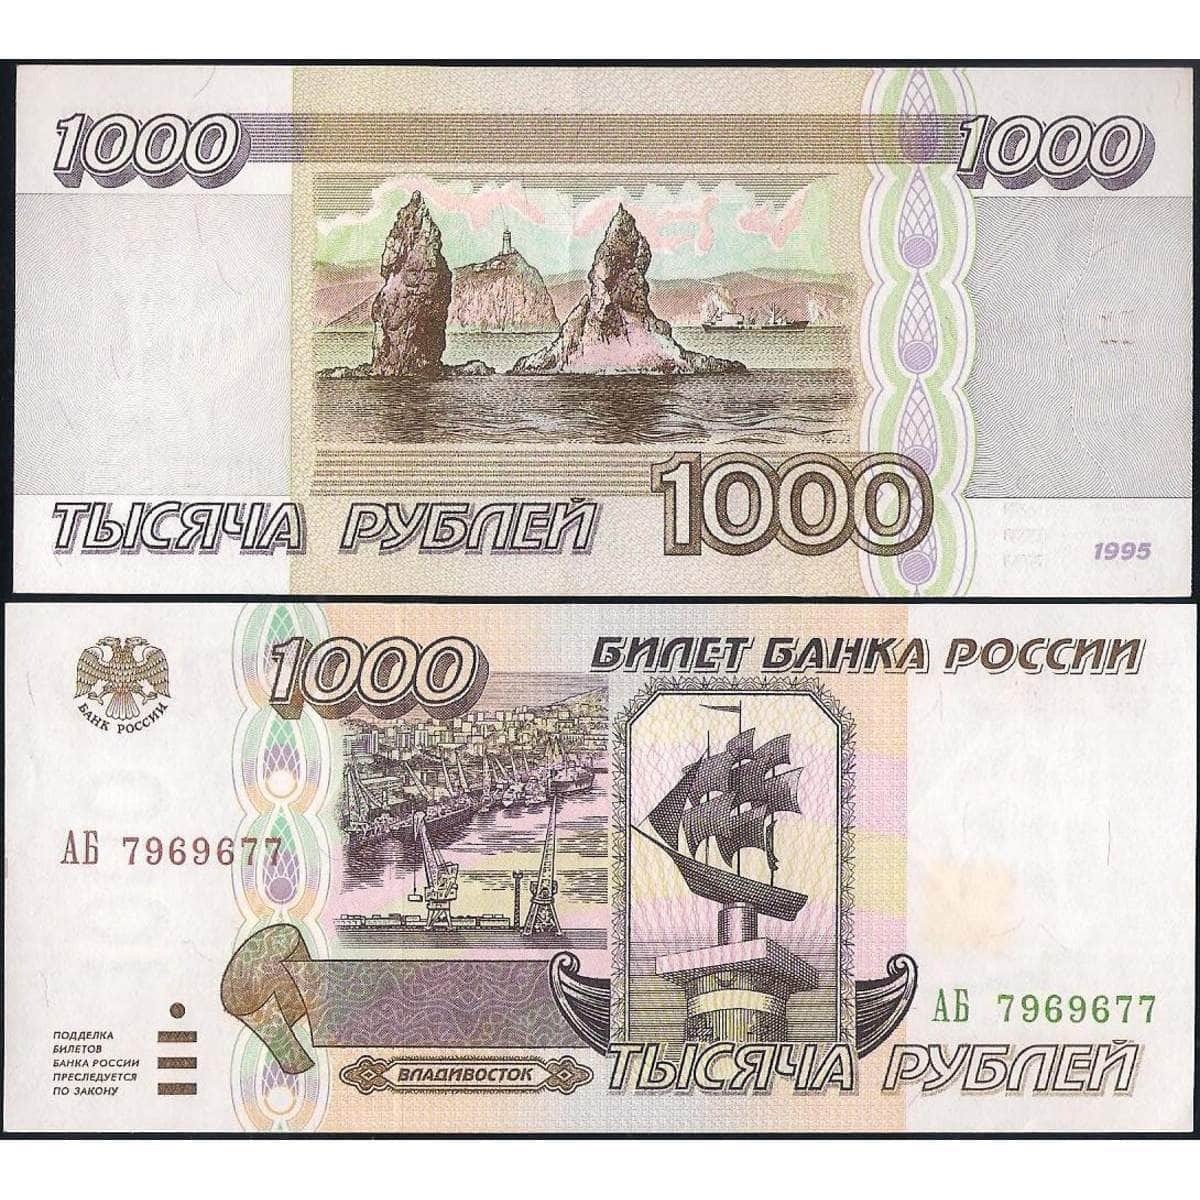 1 000 рублей россия рублей. Тысяча рублей 1995 года. 1000 Рублей 1995 года бумажные. 1000 Купюра 1995 года. Деньги 1000 рублей 1995 года.